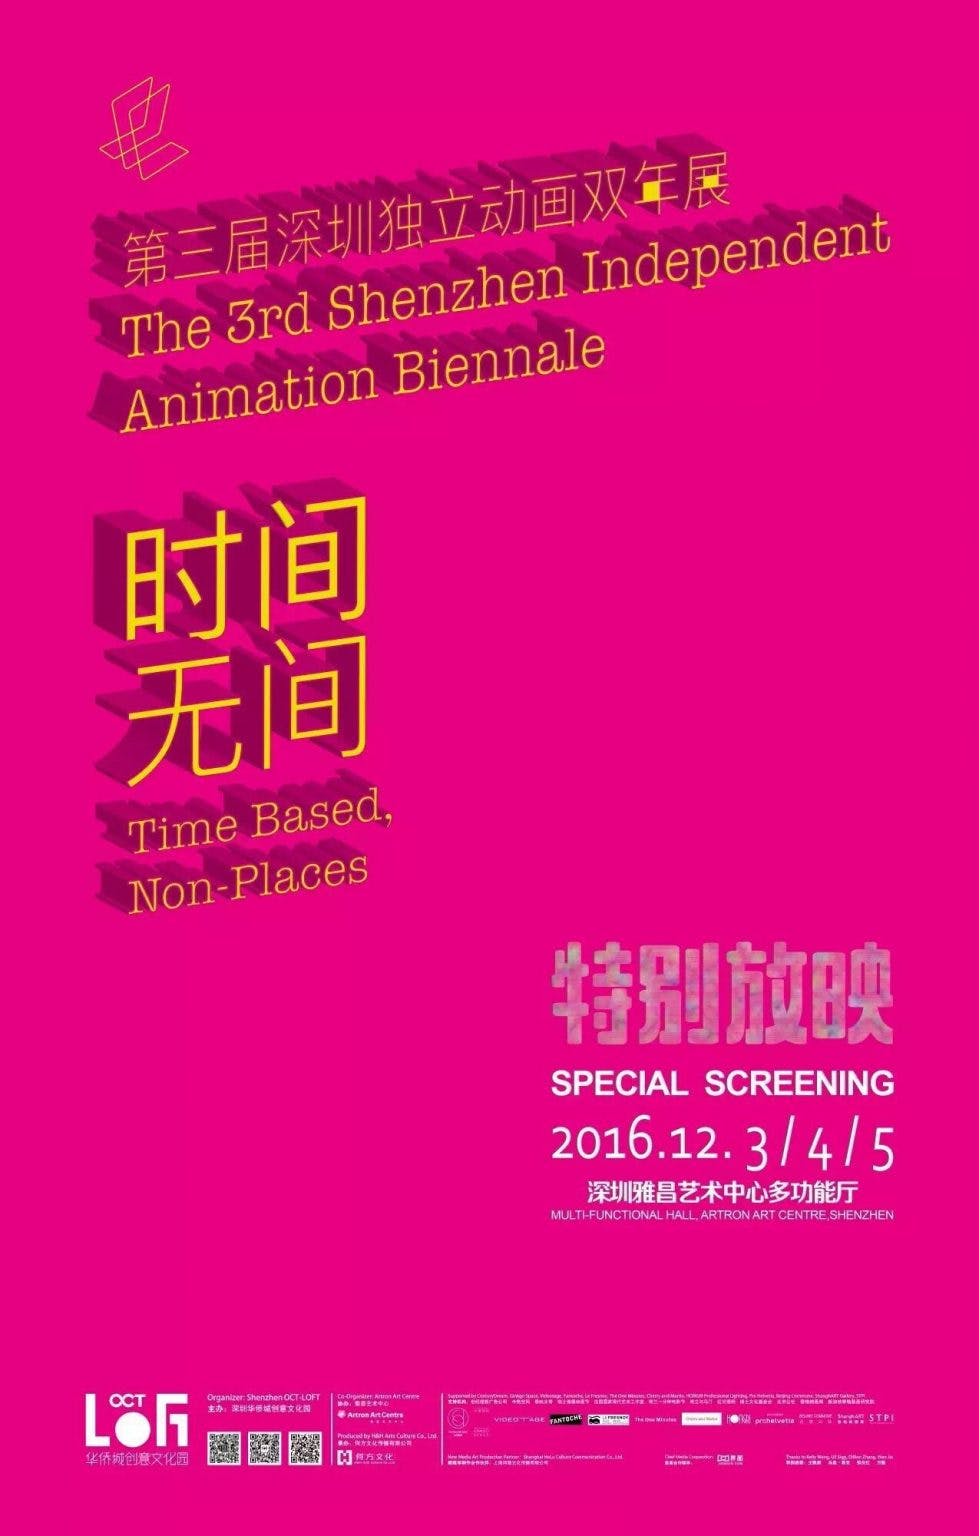 The 3rd Shenzhen Independent Animation Biennale 